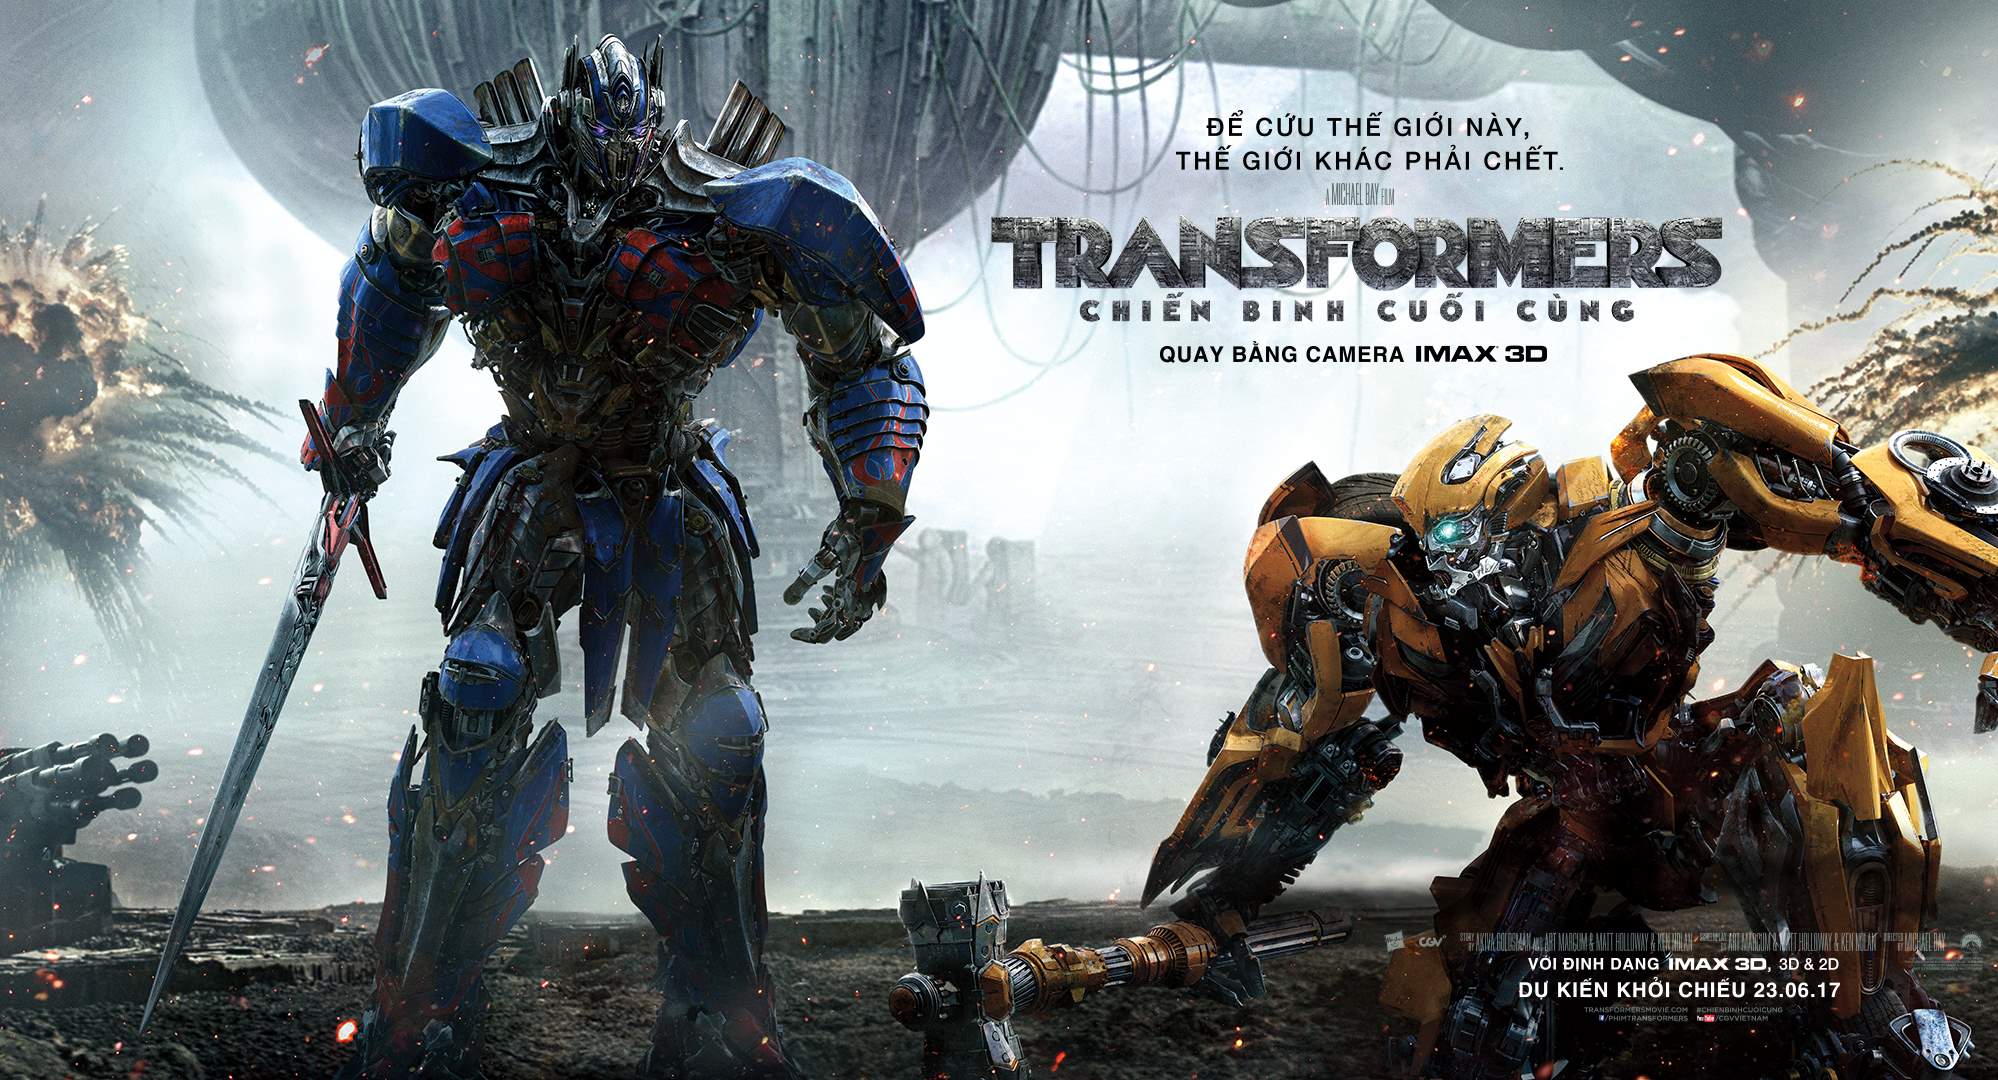 Bạn đam mê phiêu lưu không giới hạn? “Transformers The Last Knight” sẽ đưa bạn vào cuộc chiến tuyệt vời giữa Autobots và Decepticons để bảo vệ Trái Đất. Hãy xem hình ảnh liên quan để bắt đầu trải nghiệm phần phim thứ năm của loạt phim bom tấn này.